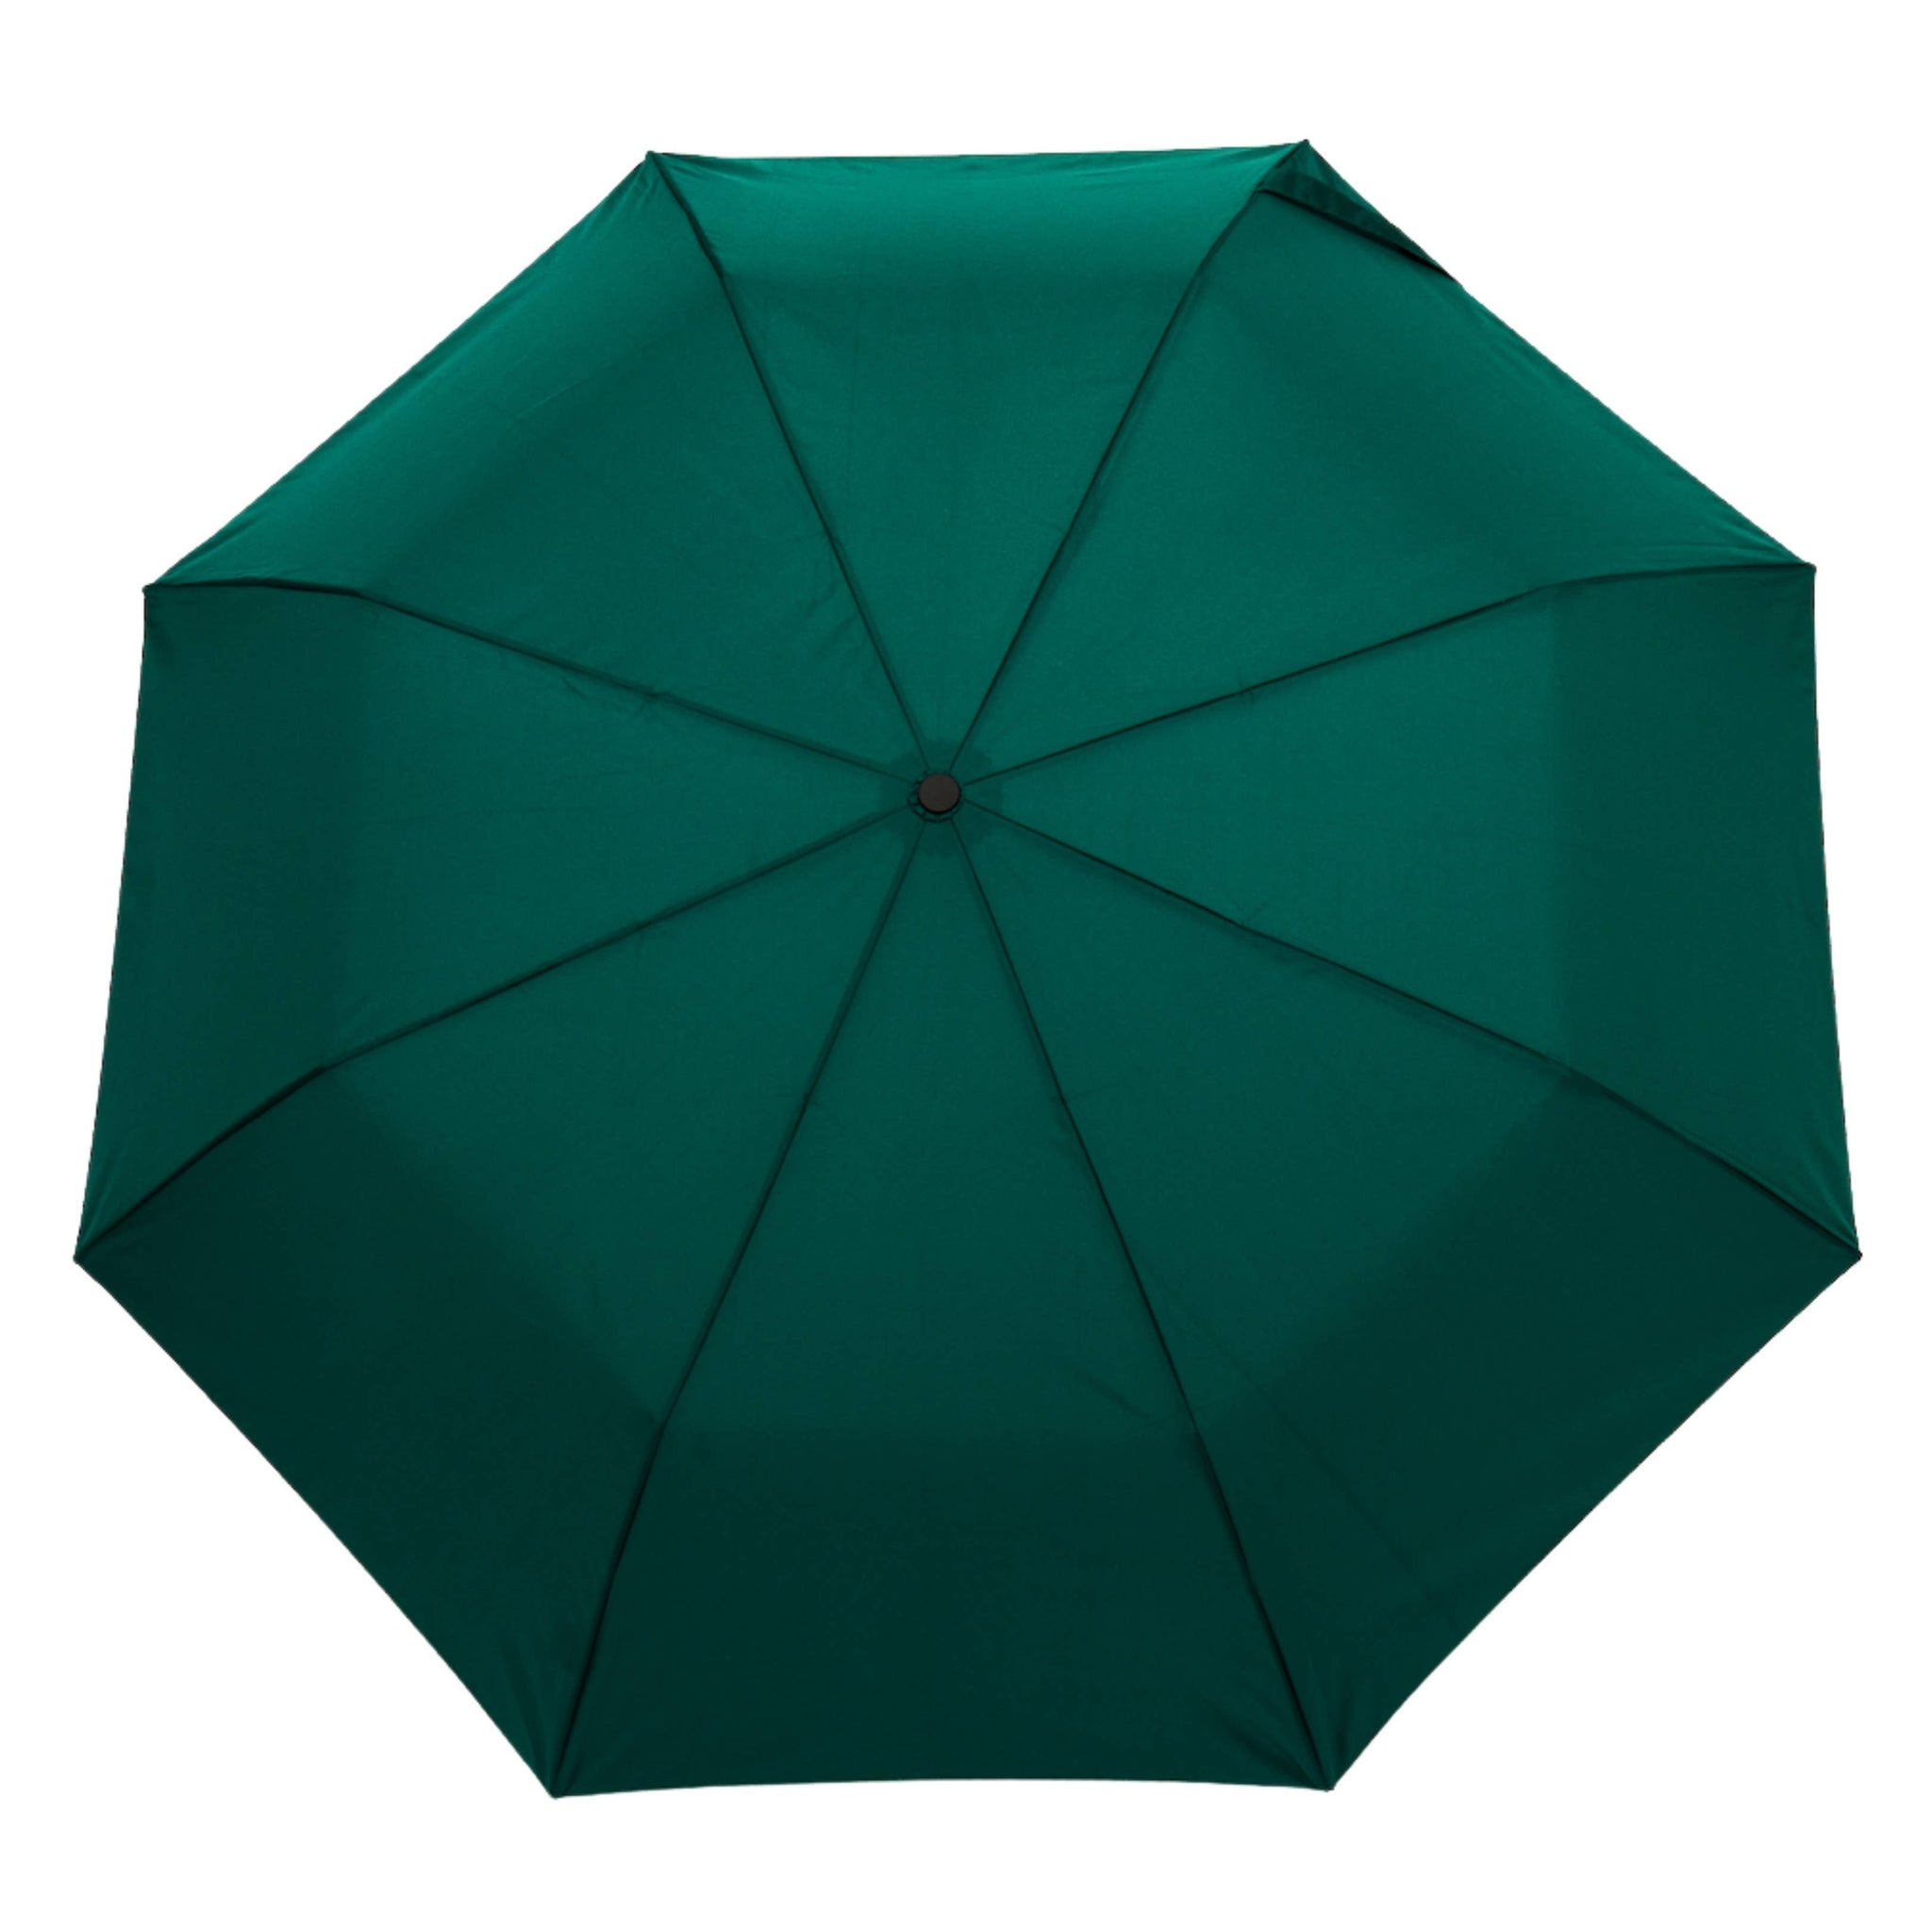 Original Duckhead US - Green Forest Compact Umbrella